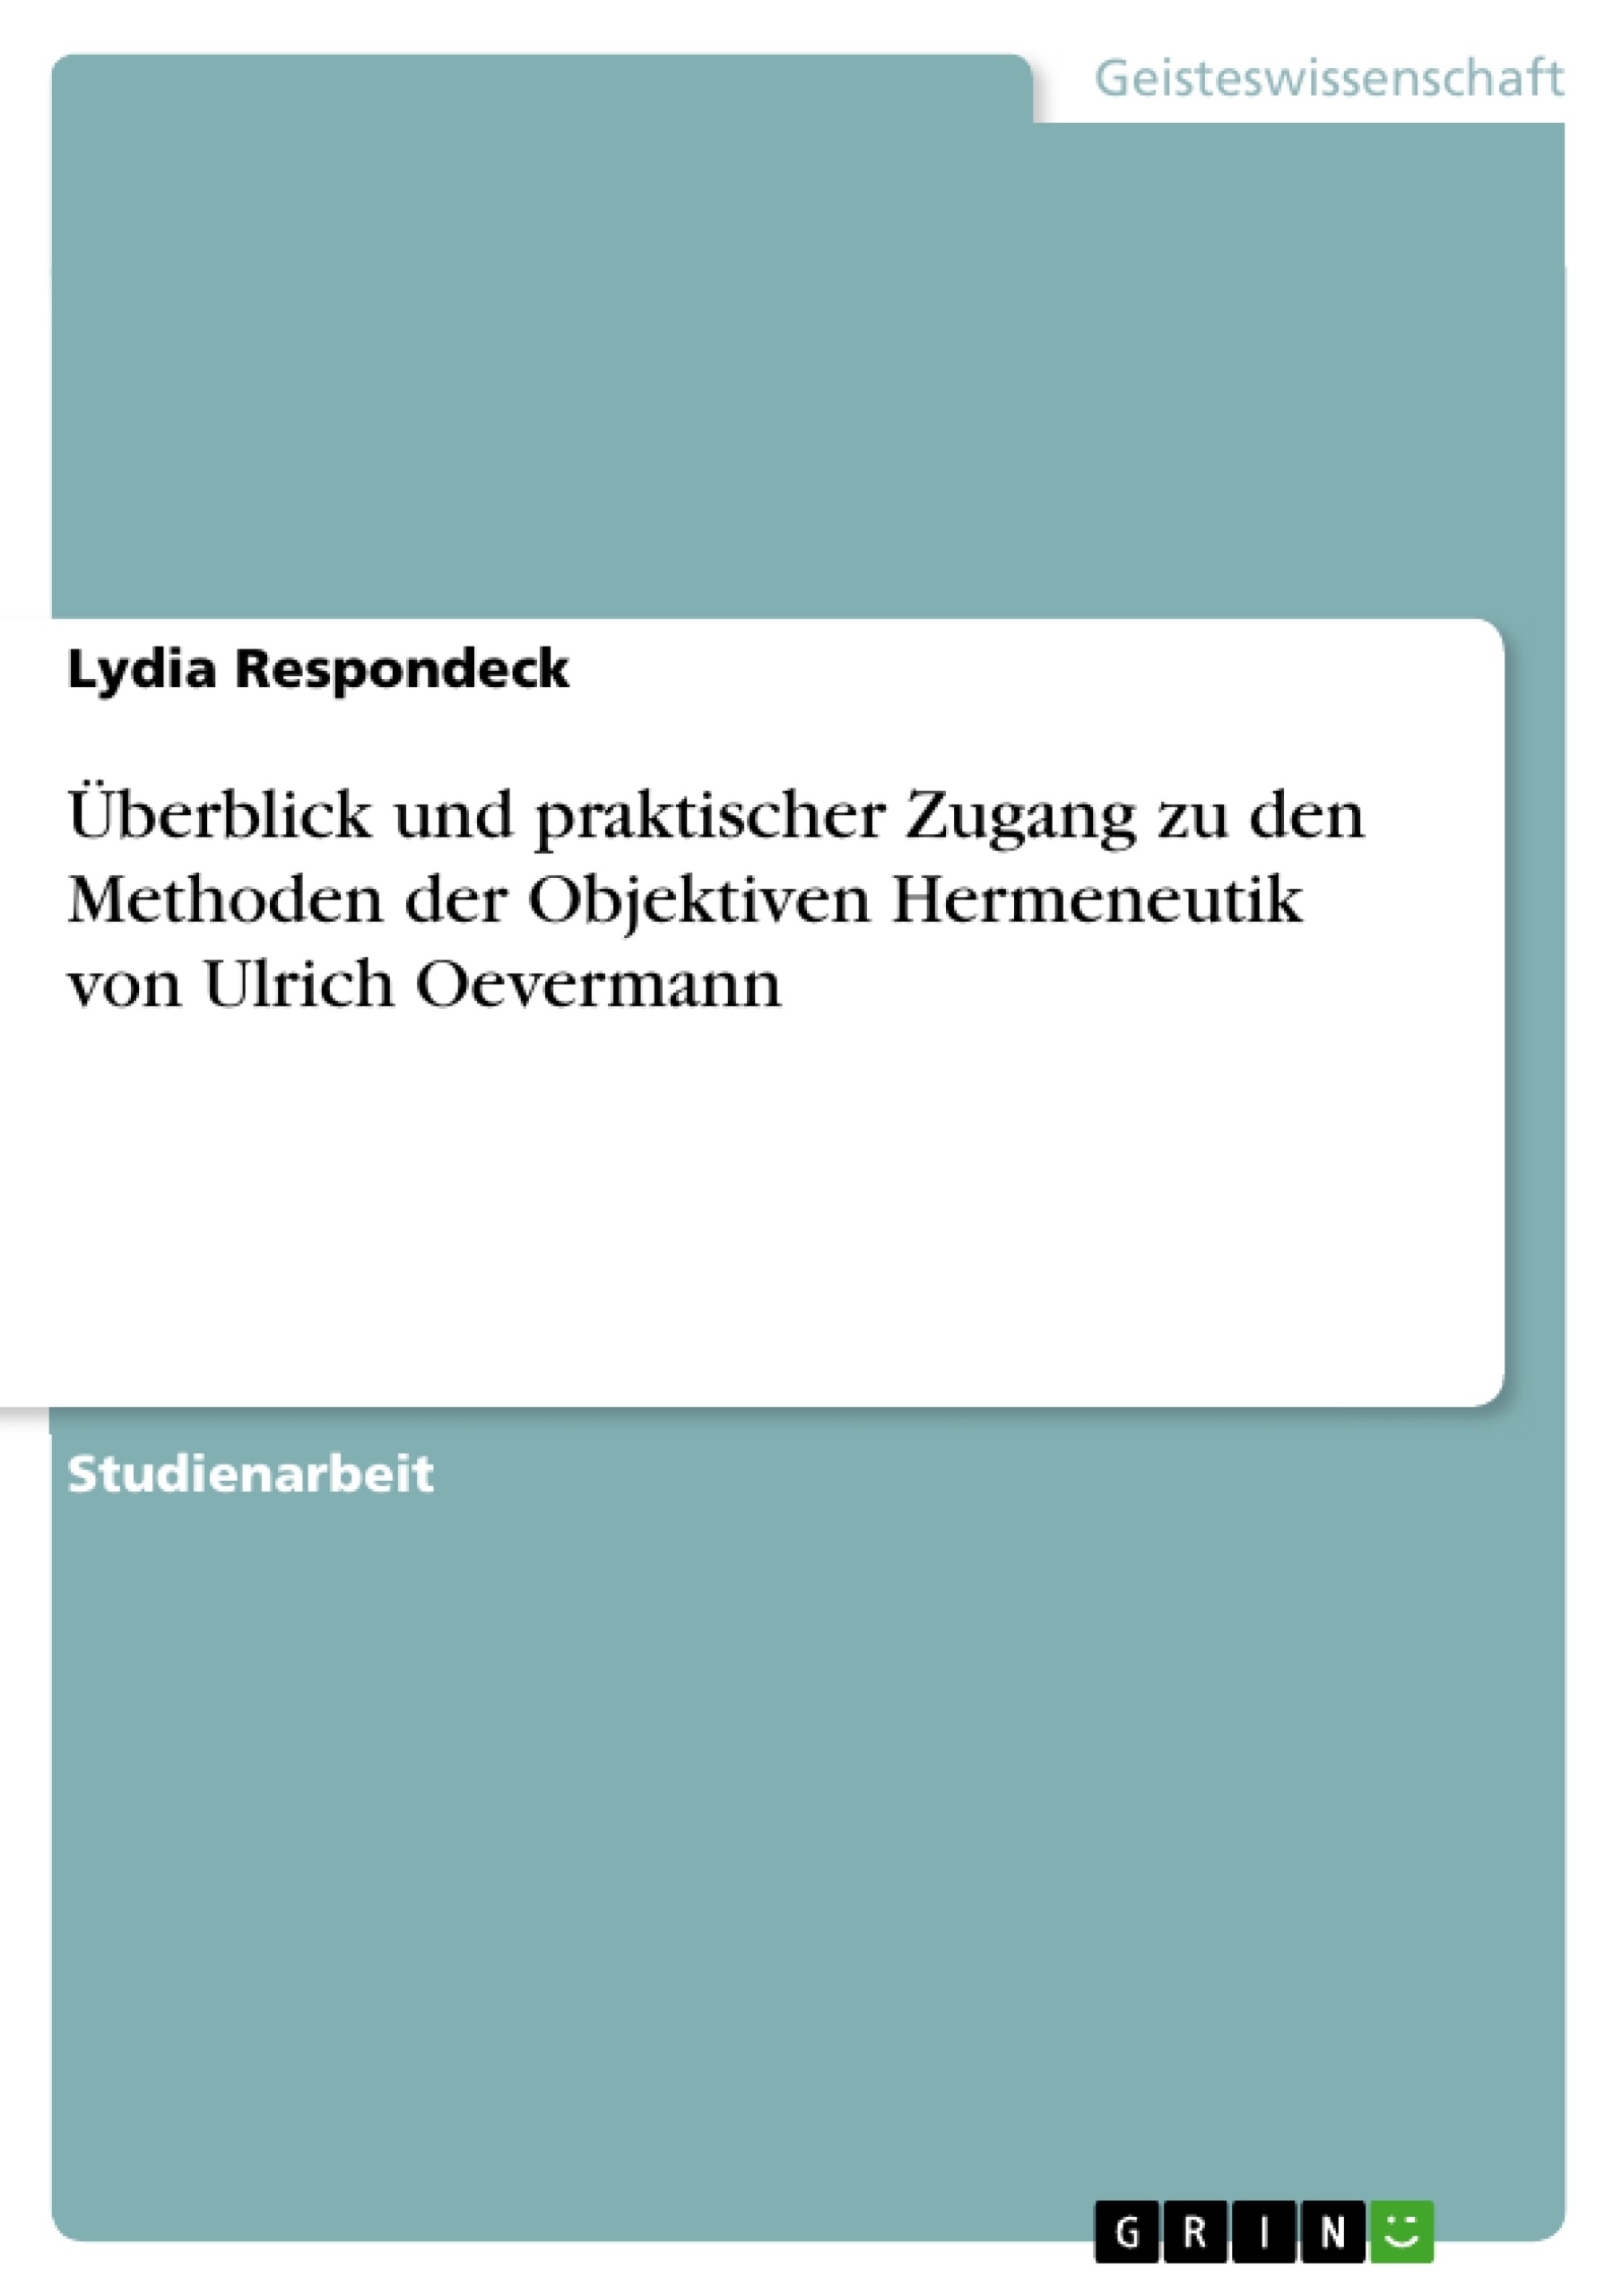 Título: Überblick und praktischer Zugang zu den Methoden der Objektiven Hermeneutik von Ulrich Oevermann